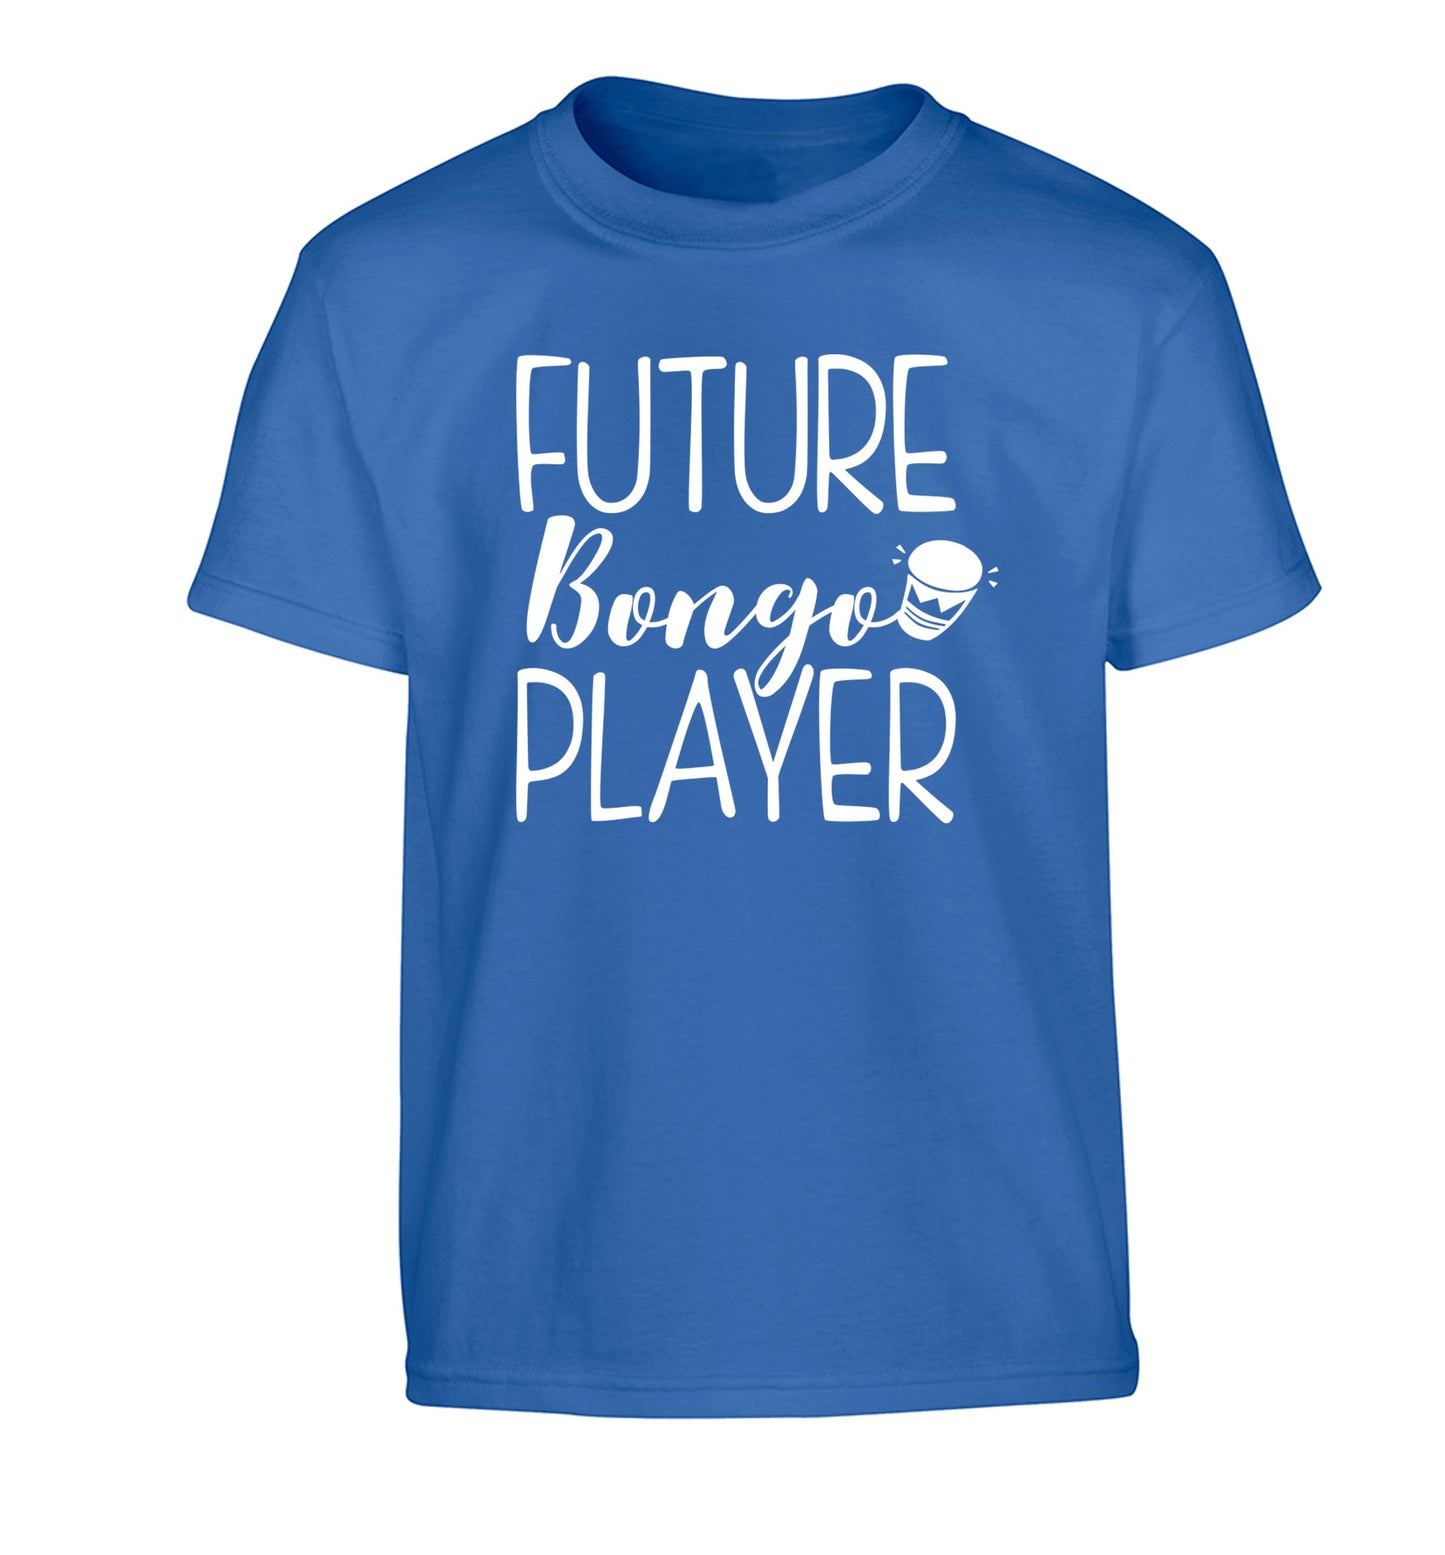 Future bongo player Children's blue Tshirt 12-14 Years